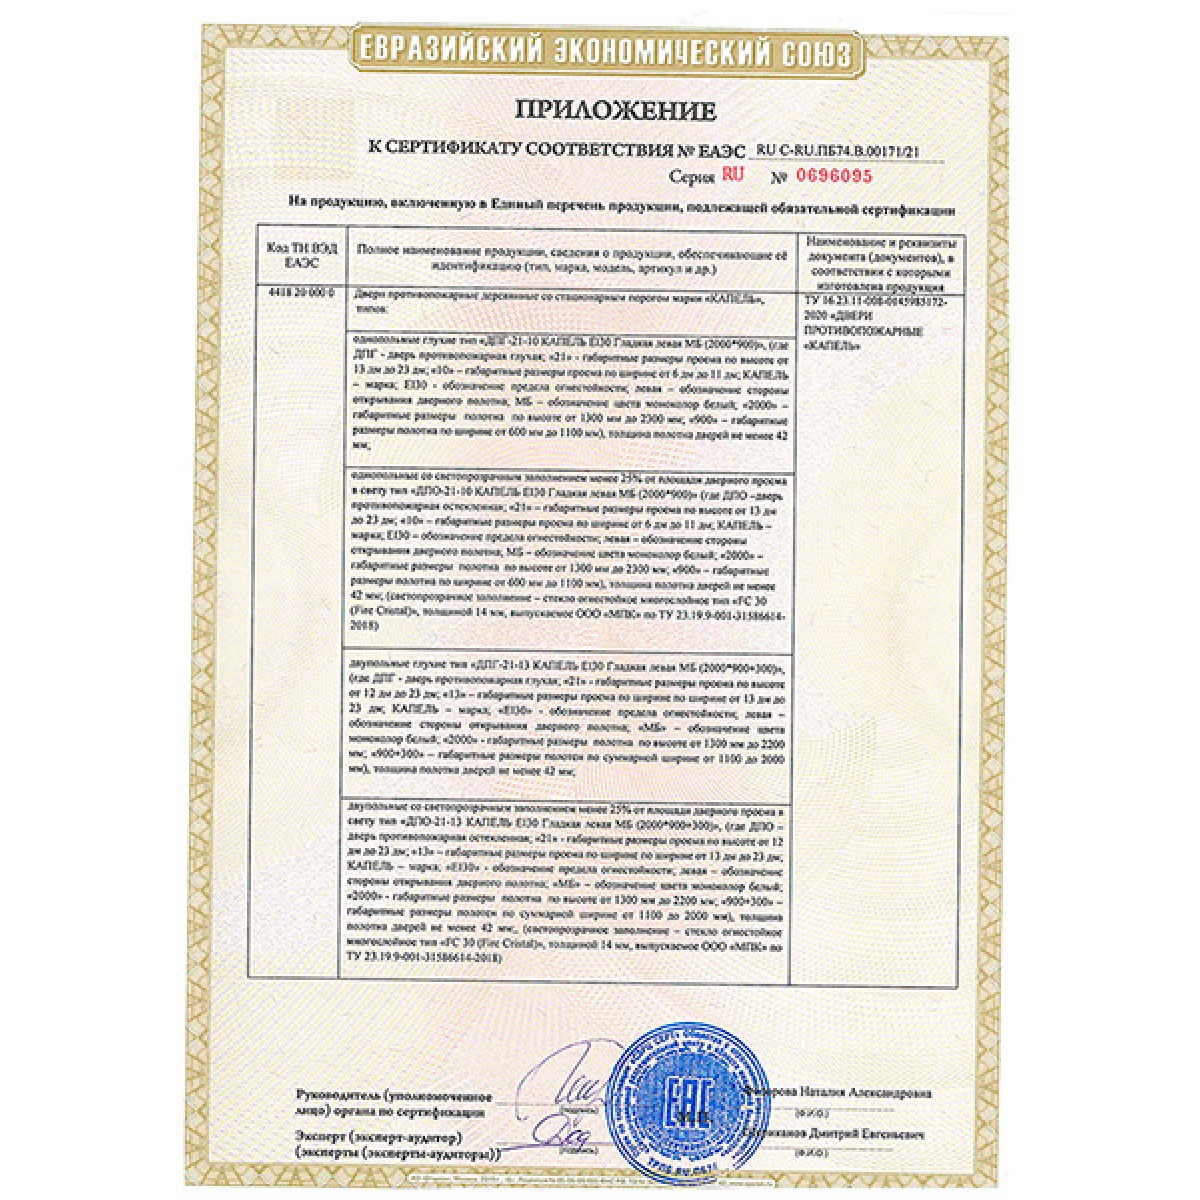 Сертификат соответствия "Капель" пп двери (стр. 2)